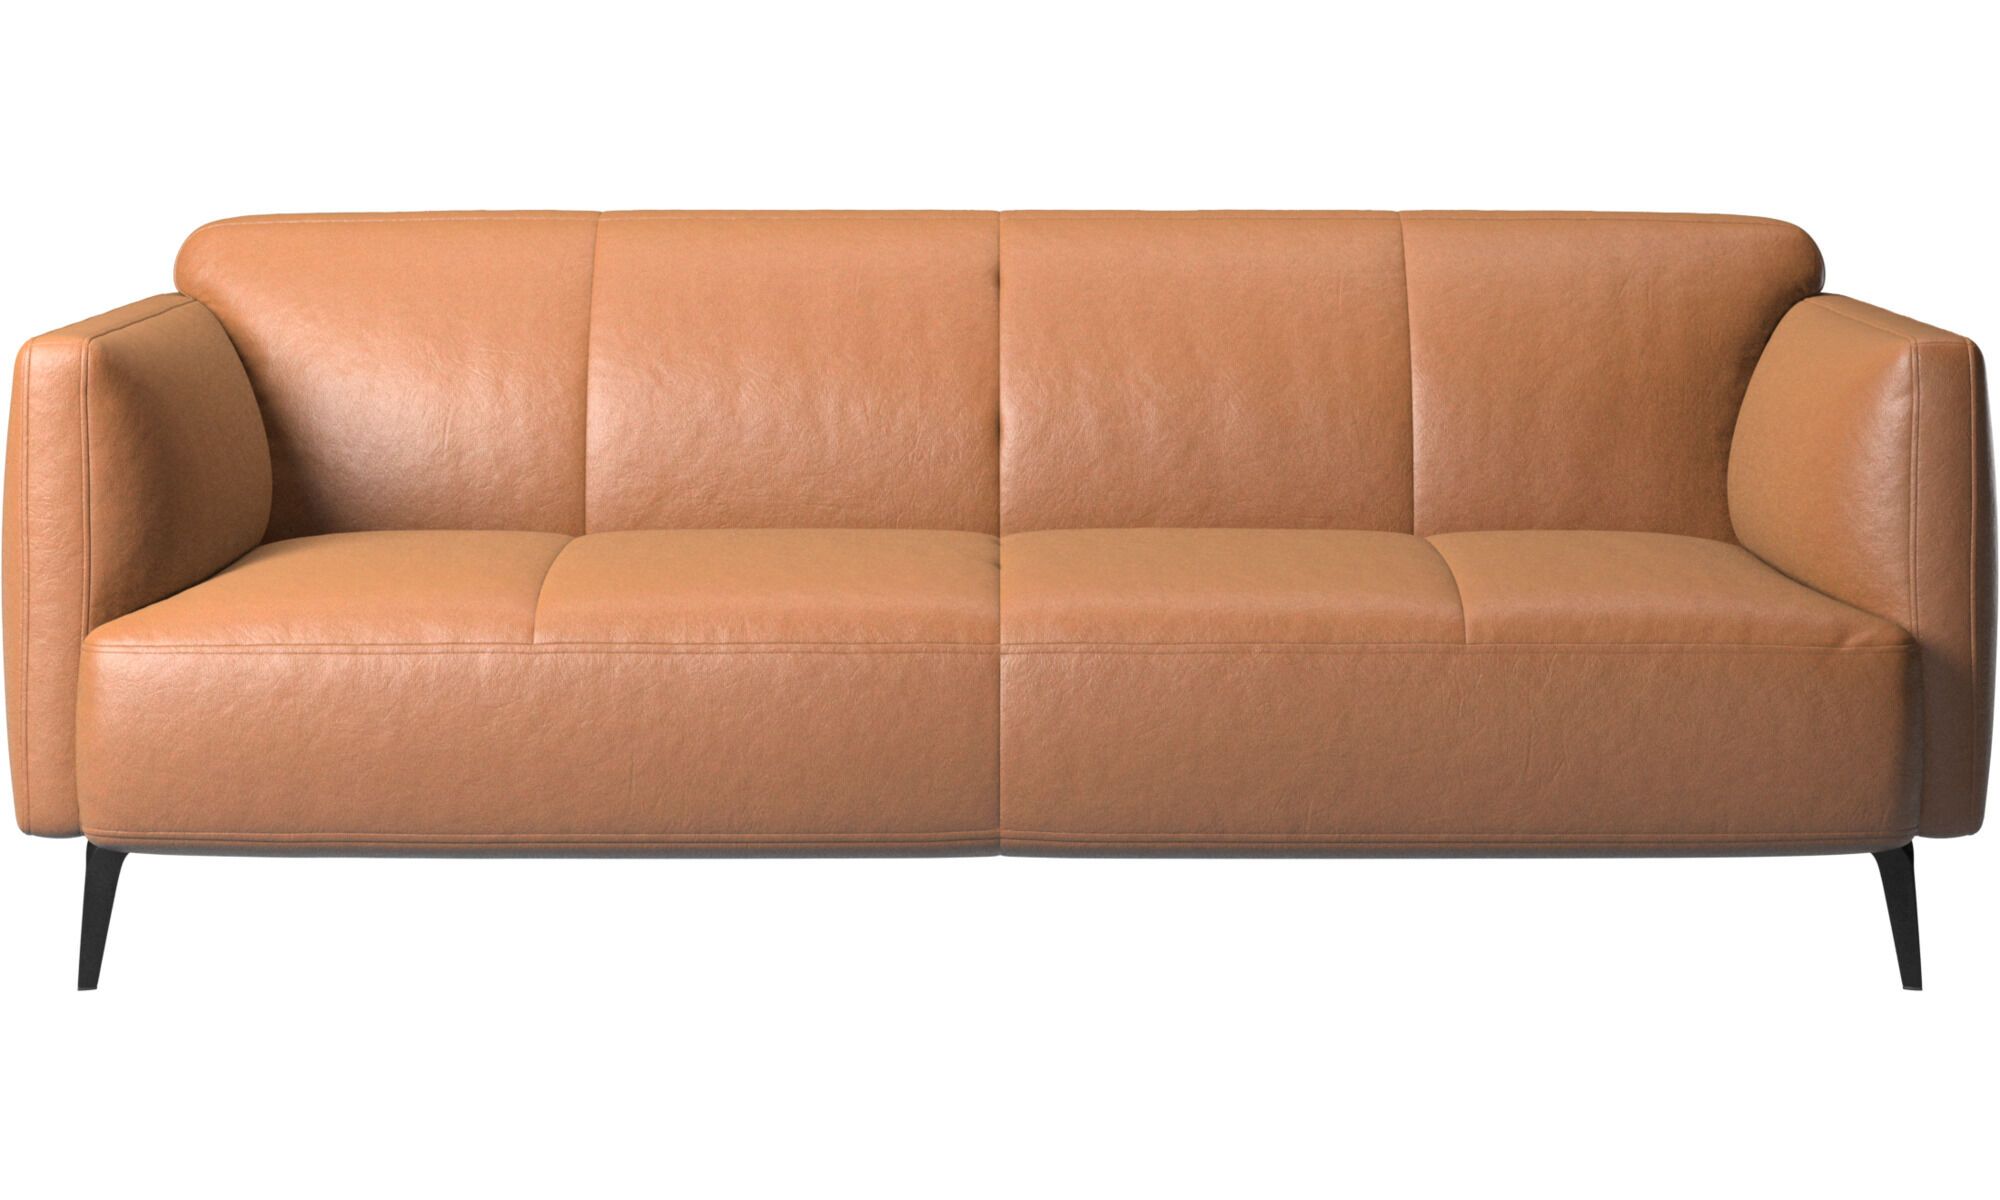 2,5 местный диван Modena с подлокотниками - Sienna 5111 Бежевая кожа